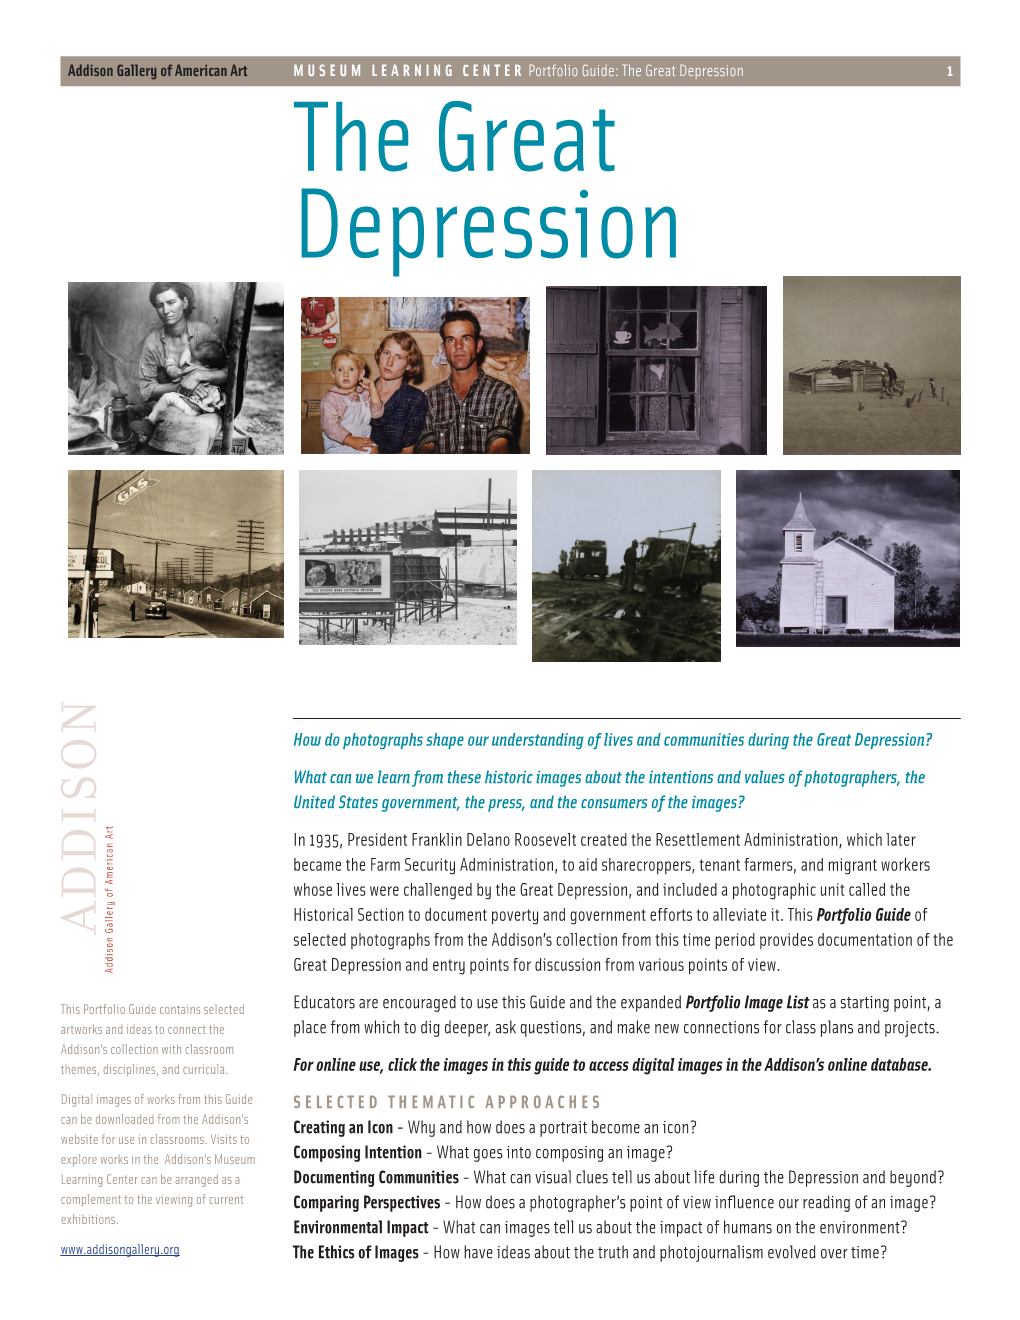 The Great Depression Portfolio Guide